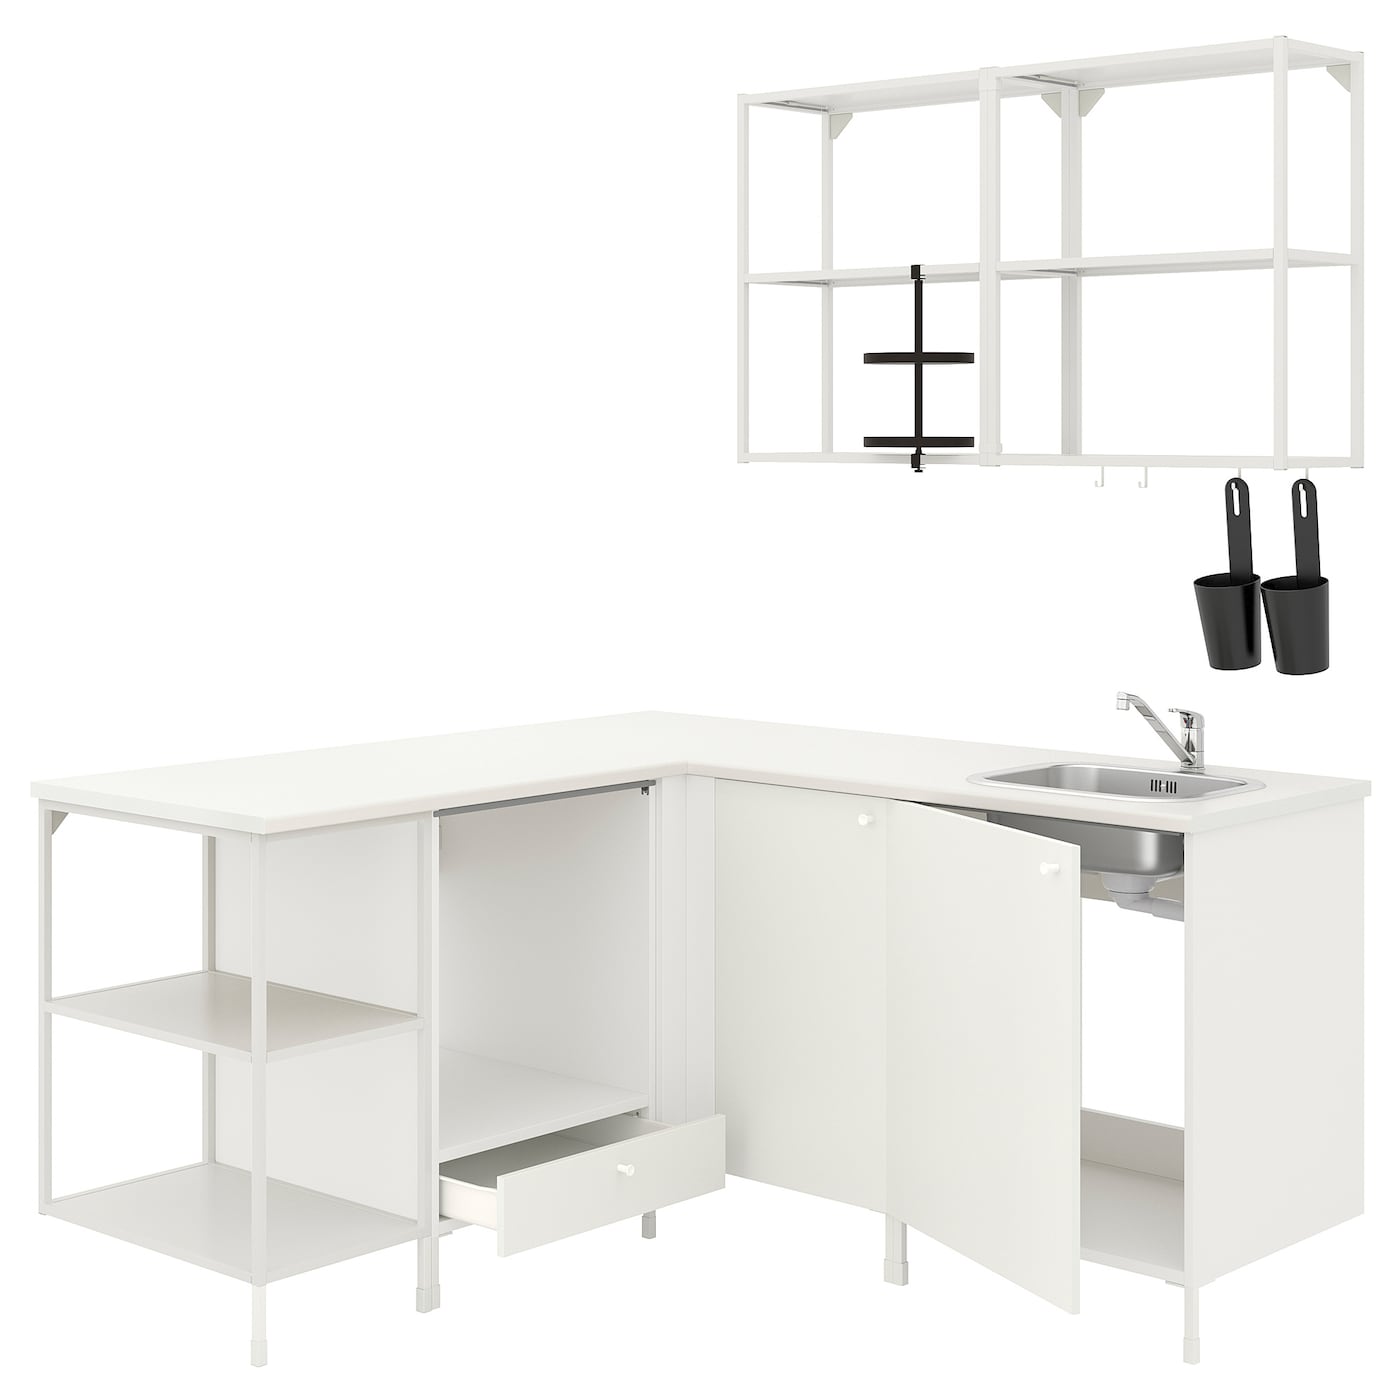 Угловая кухня -  ENHET  IKEA/ ЭНХЕТ ИКЕА, 170,5х75 см, белый